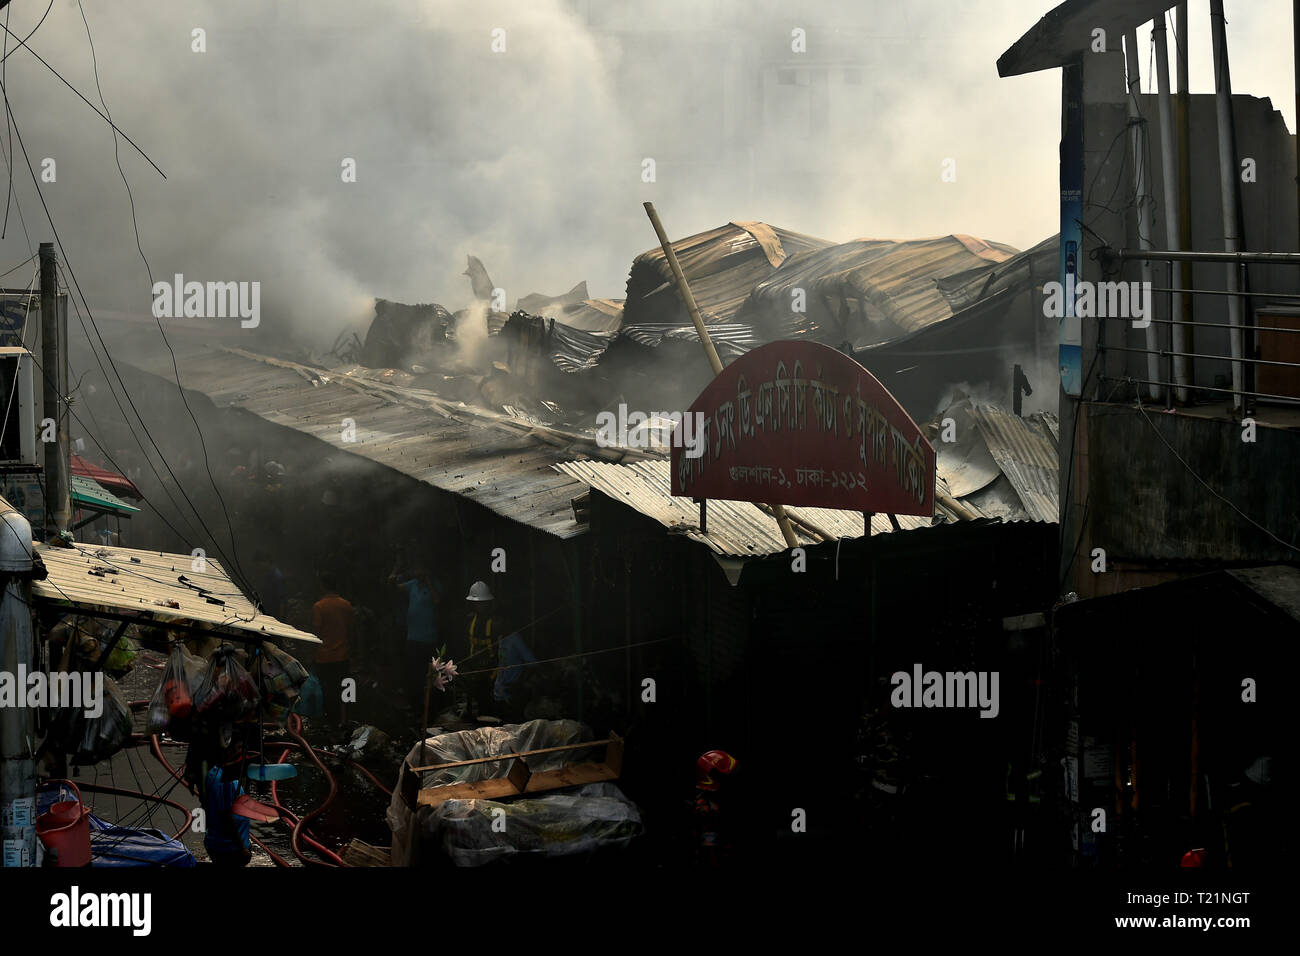 Dhaka, Bangladesch. 30 Mär, 2019. Eine Küche ist in Blaze in Dhaka, Bangladesh, 30. März 2019 verbrannt. Ein Feuer, ausgenommen, mit Hunderten von Geschäften in einer Küche Markt in Dhaka Gulshan Bereich am Samstag, Zerstörung von Gütern und Besitz, sagte ein Feuerwehrmann. Keine Verletzten haben sich bisher gemeldet. Der Markt wurde nicht offen für Unternehmen zu der Zeit, als das Feuer ausbrach. Credit: Stringer/Xinhua/Alamy leben Nachrichten Stockfoto